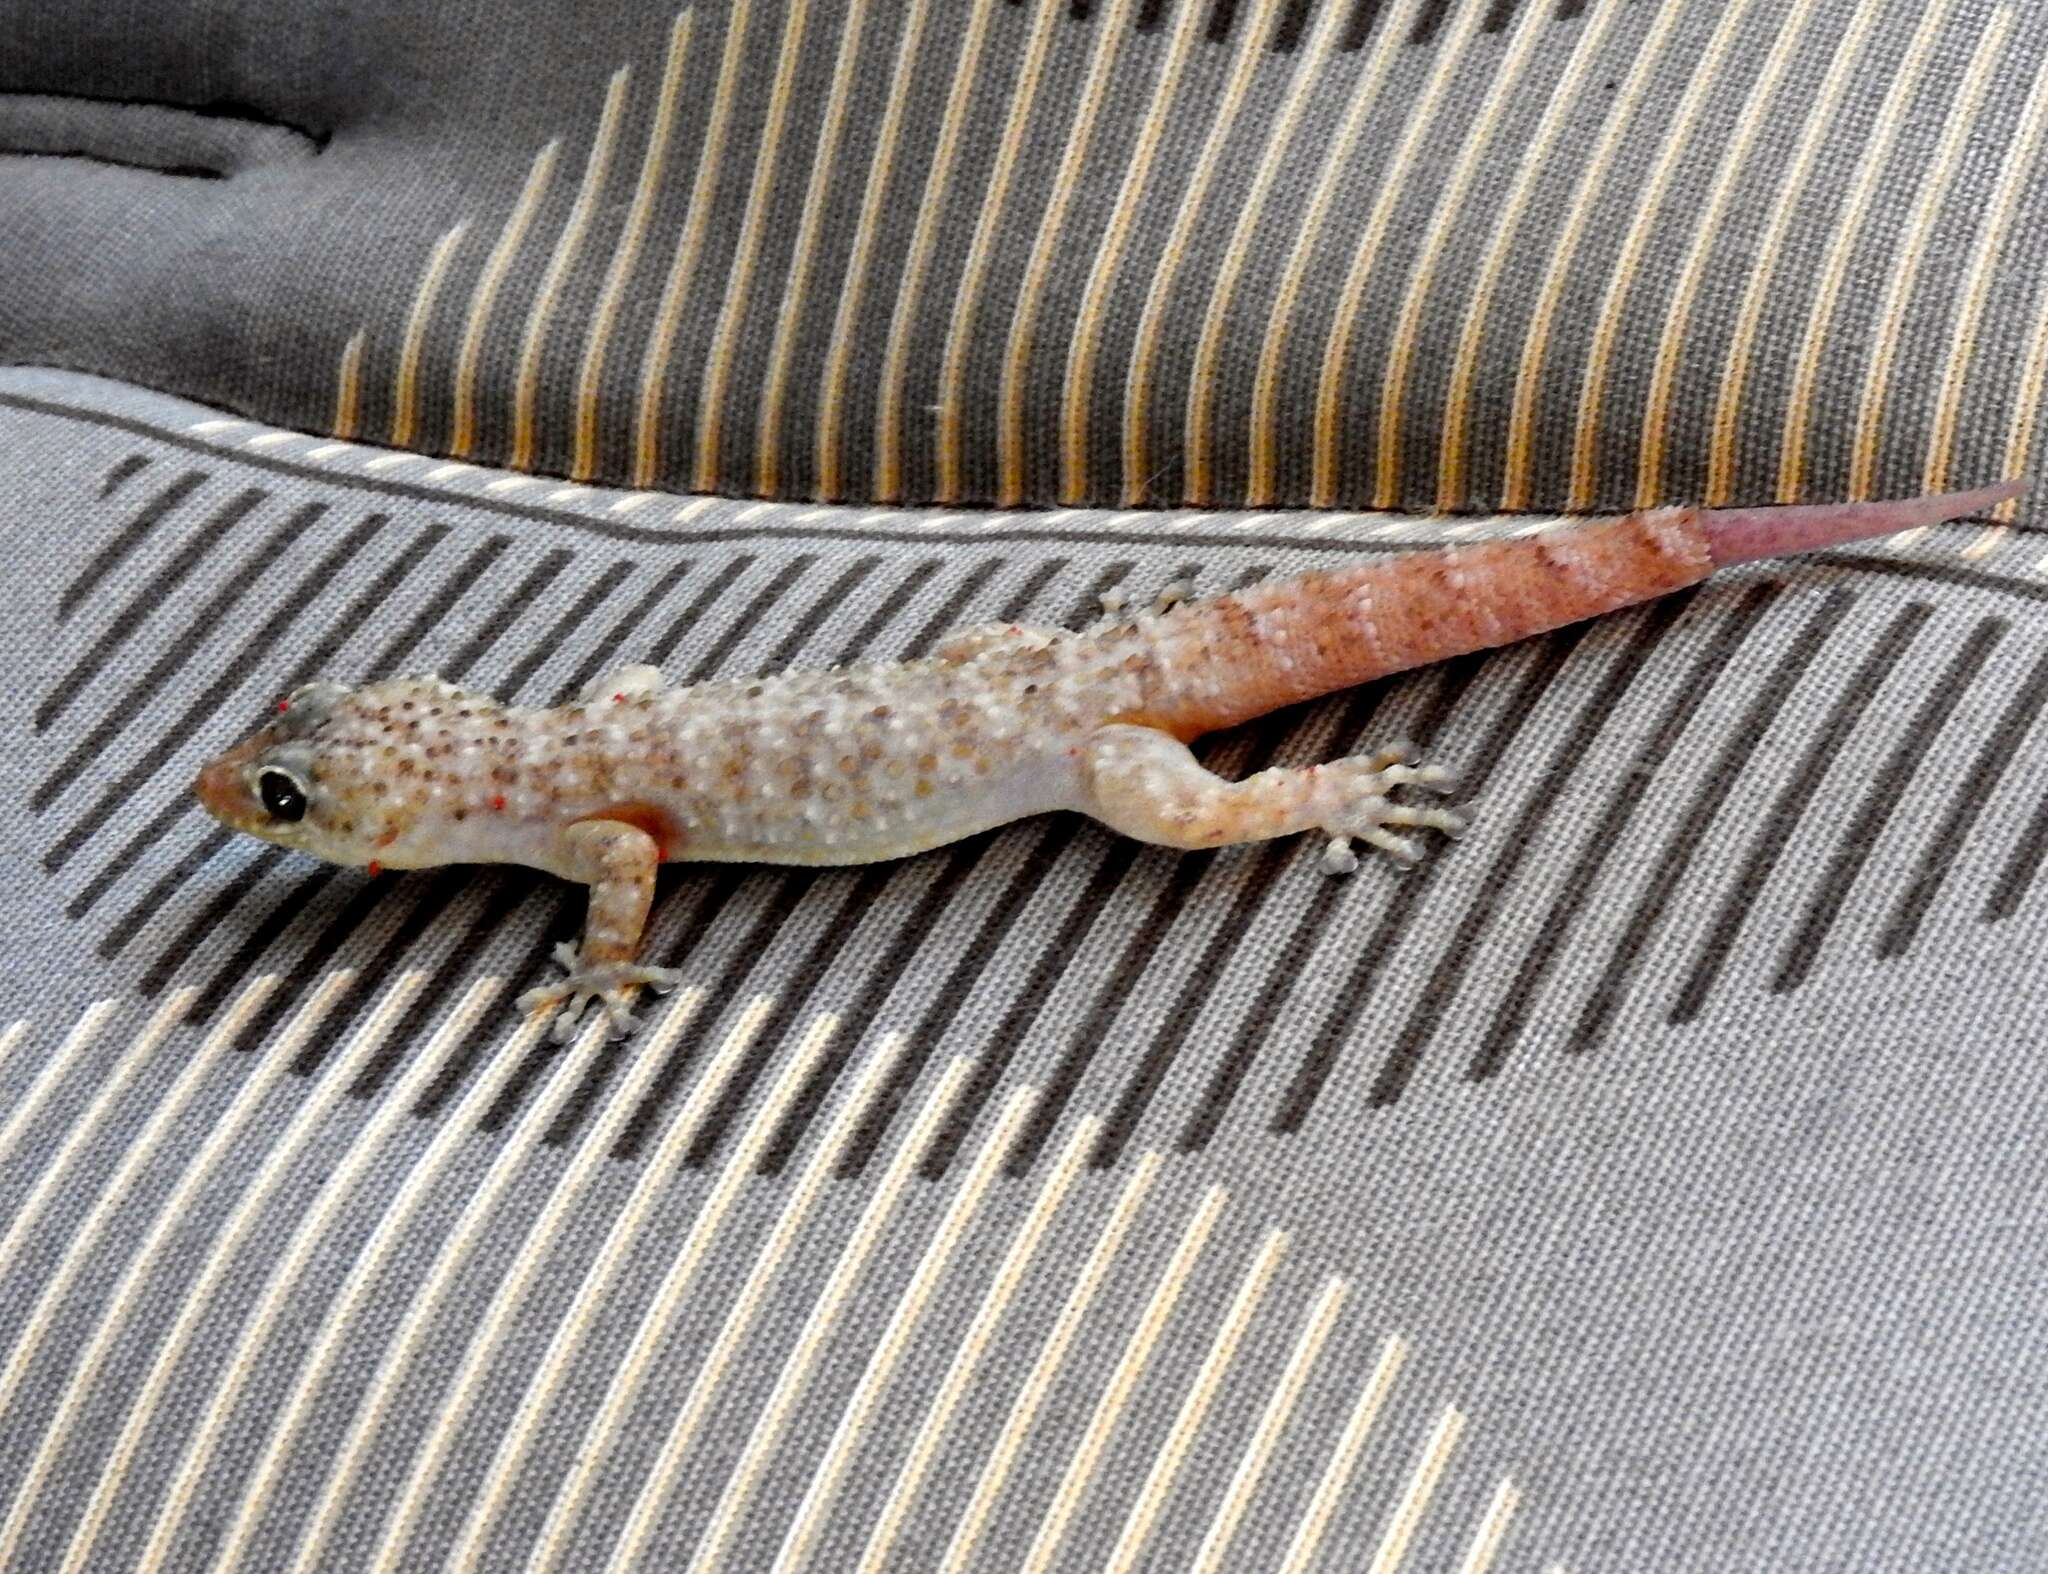 Image of Lane's Leaf-toed Gecko